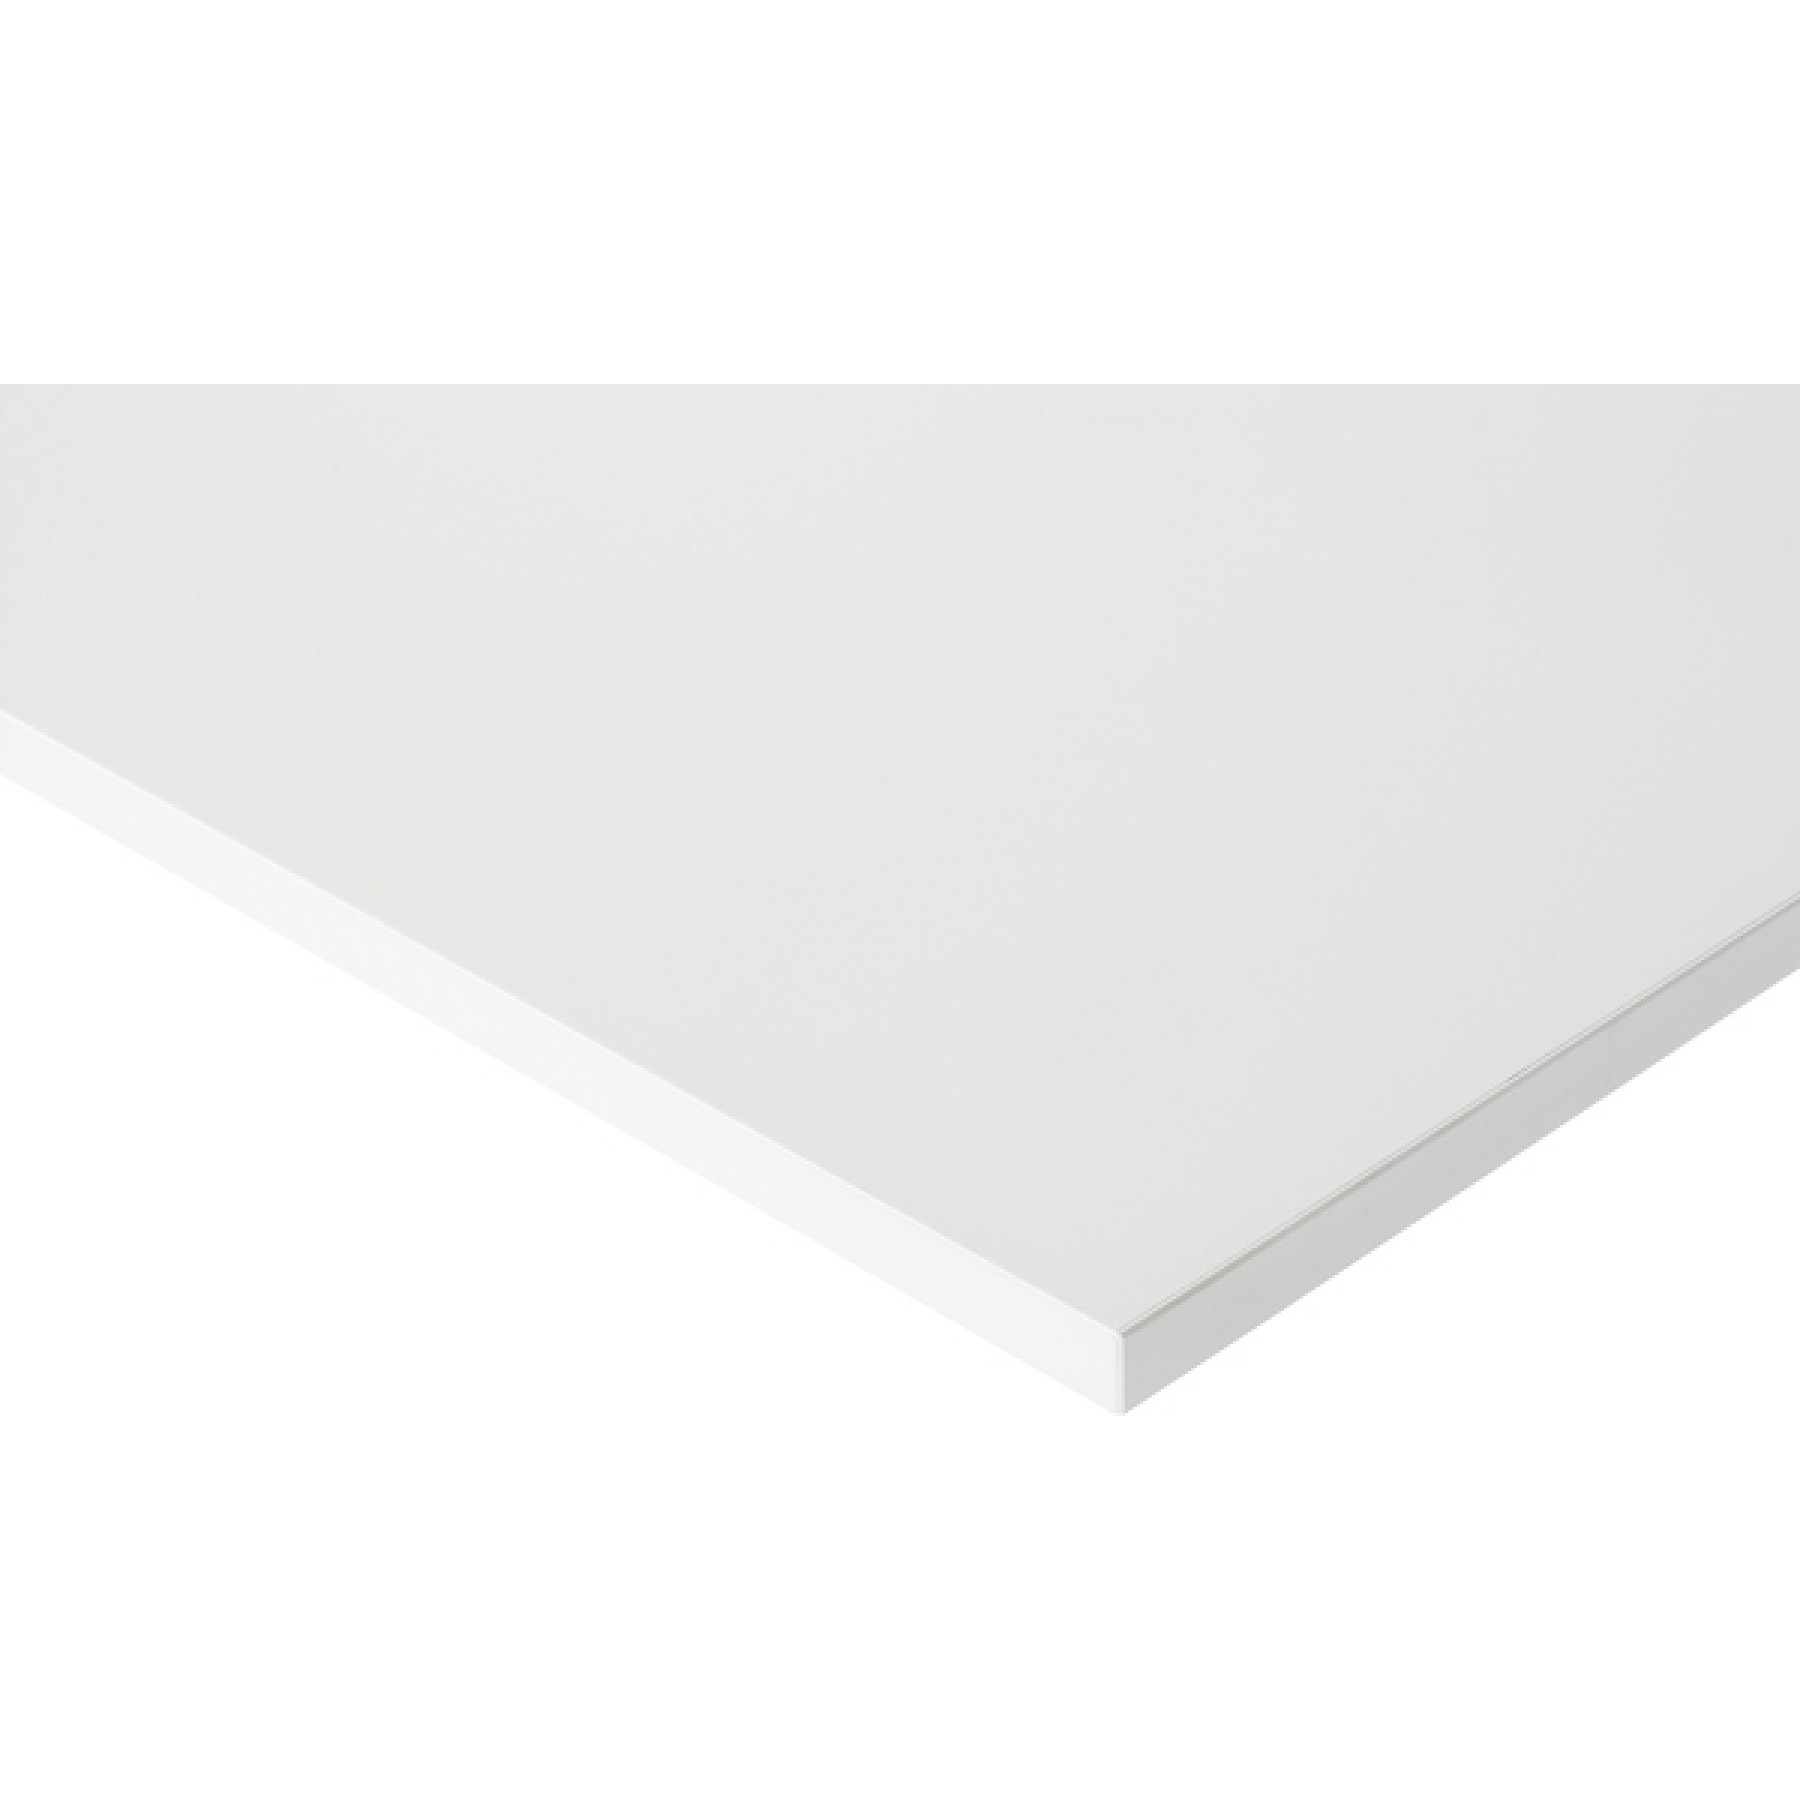 Werktafel met werkblad met melaminehars coating, serie 900